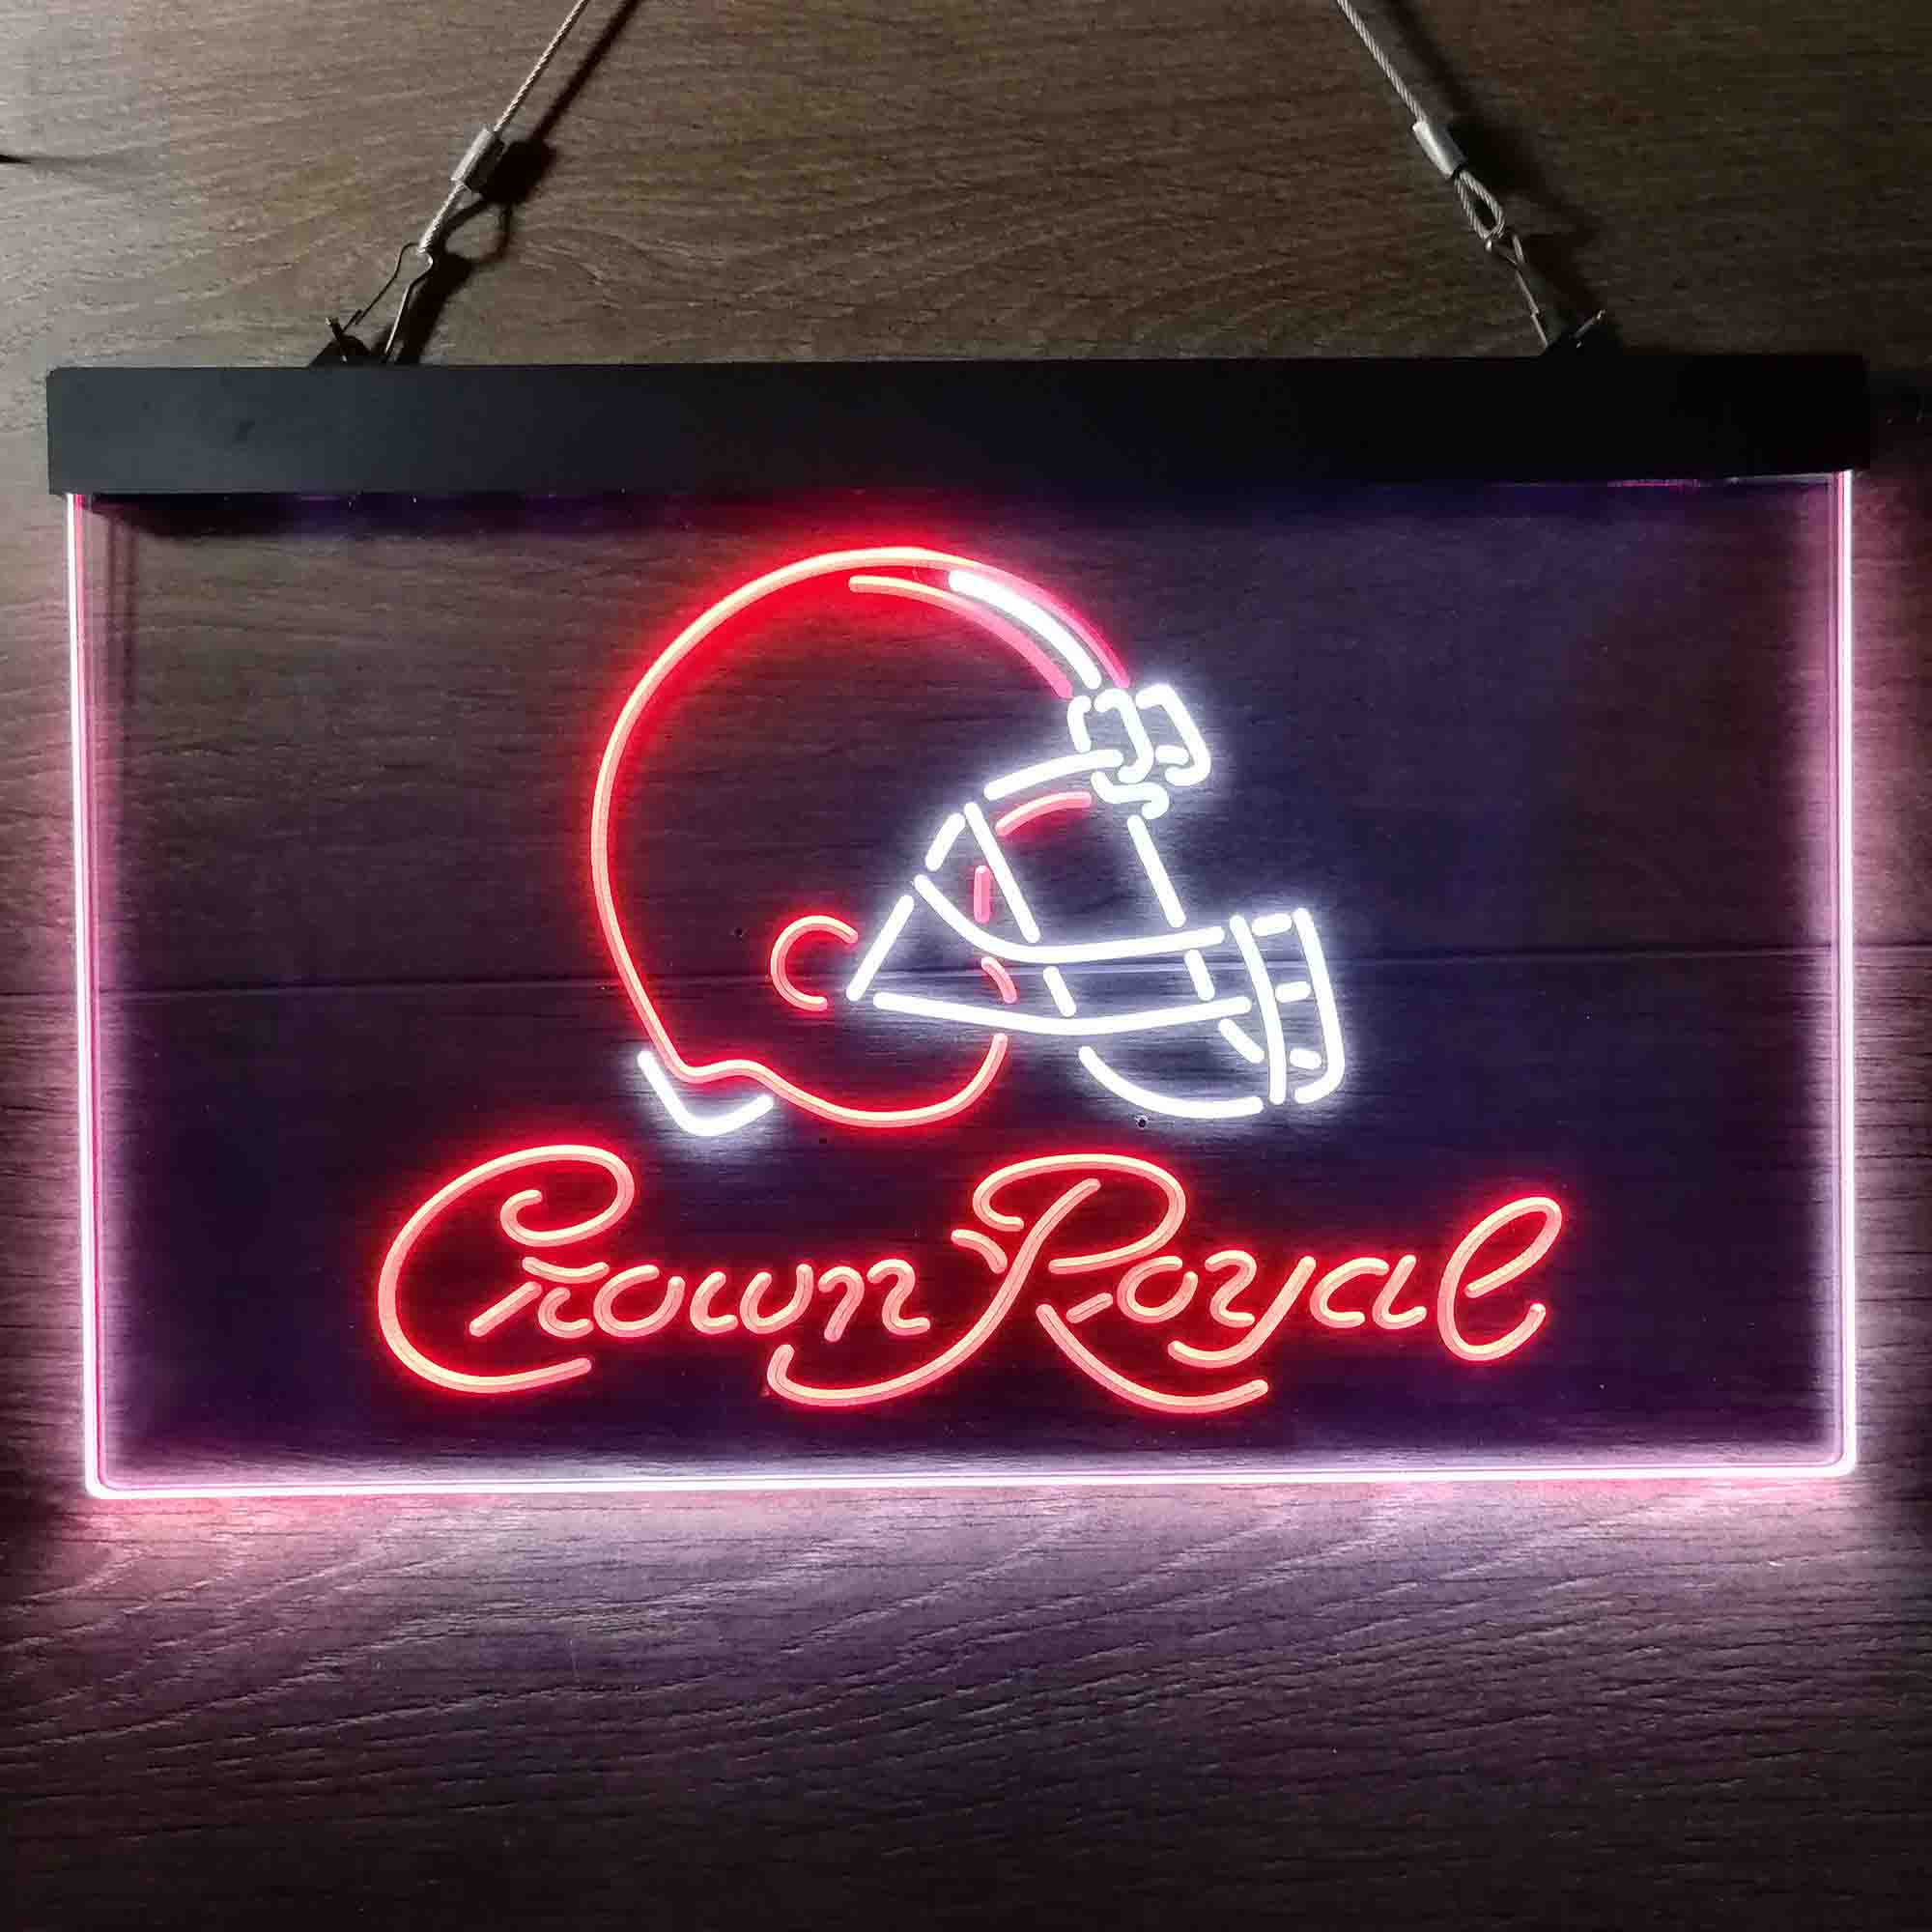 Crown Royal Bar Cleveland Browns Est. 1946 LED Neon Sign